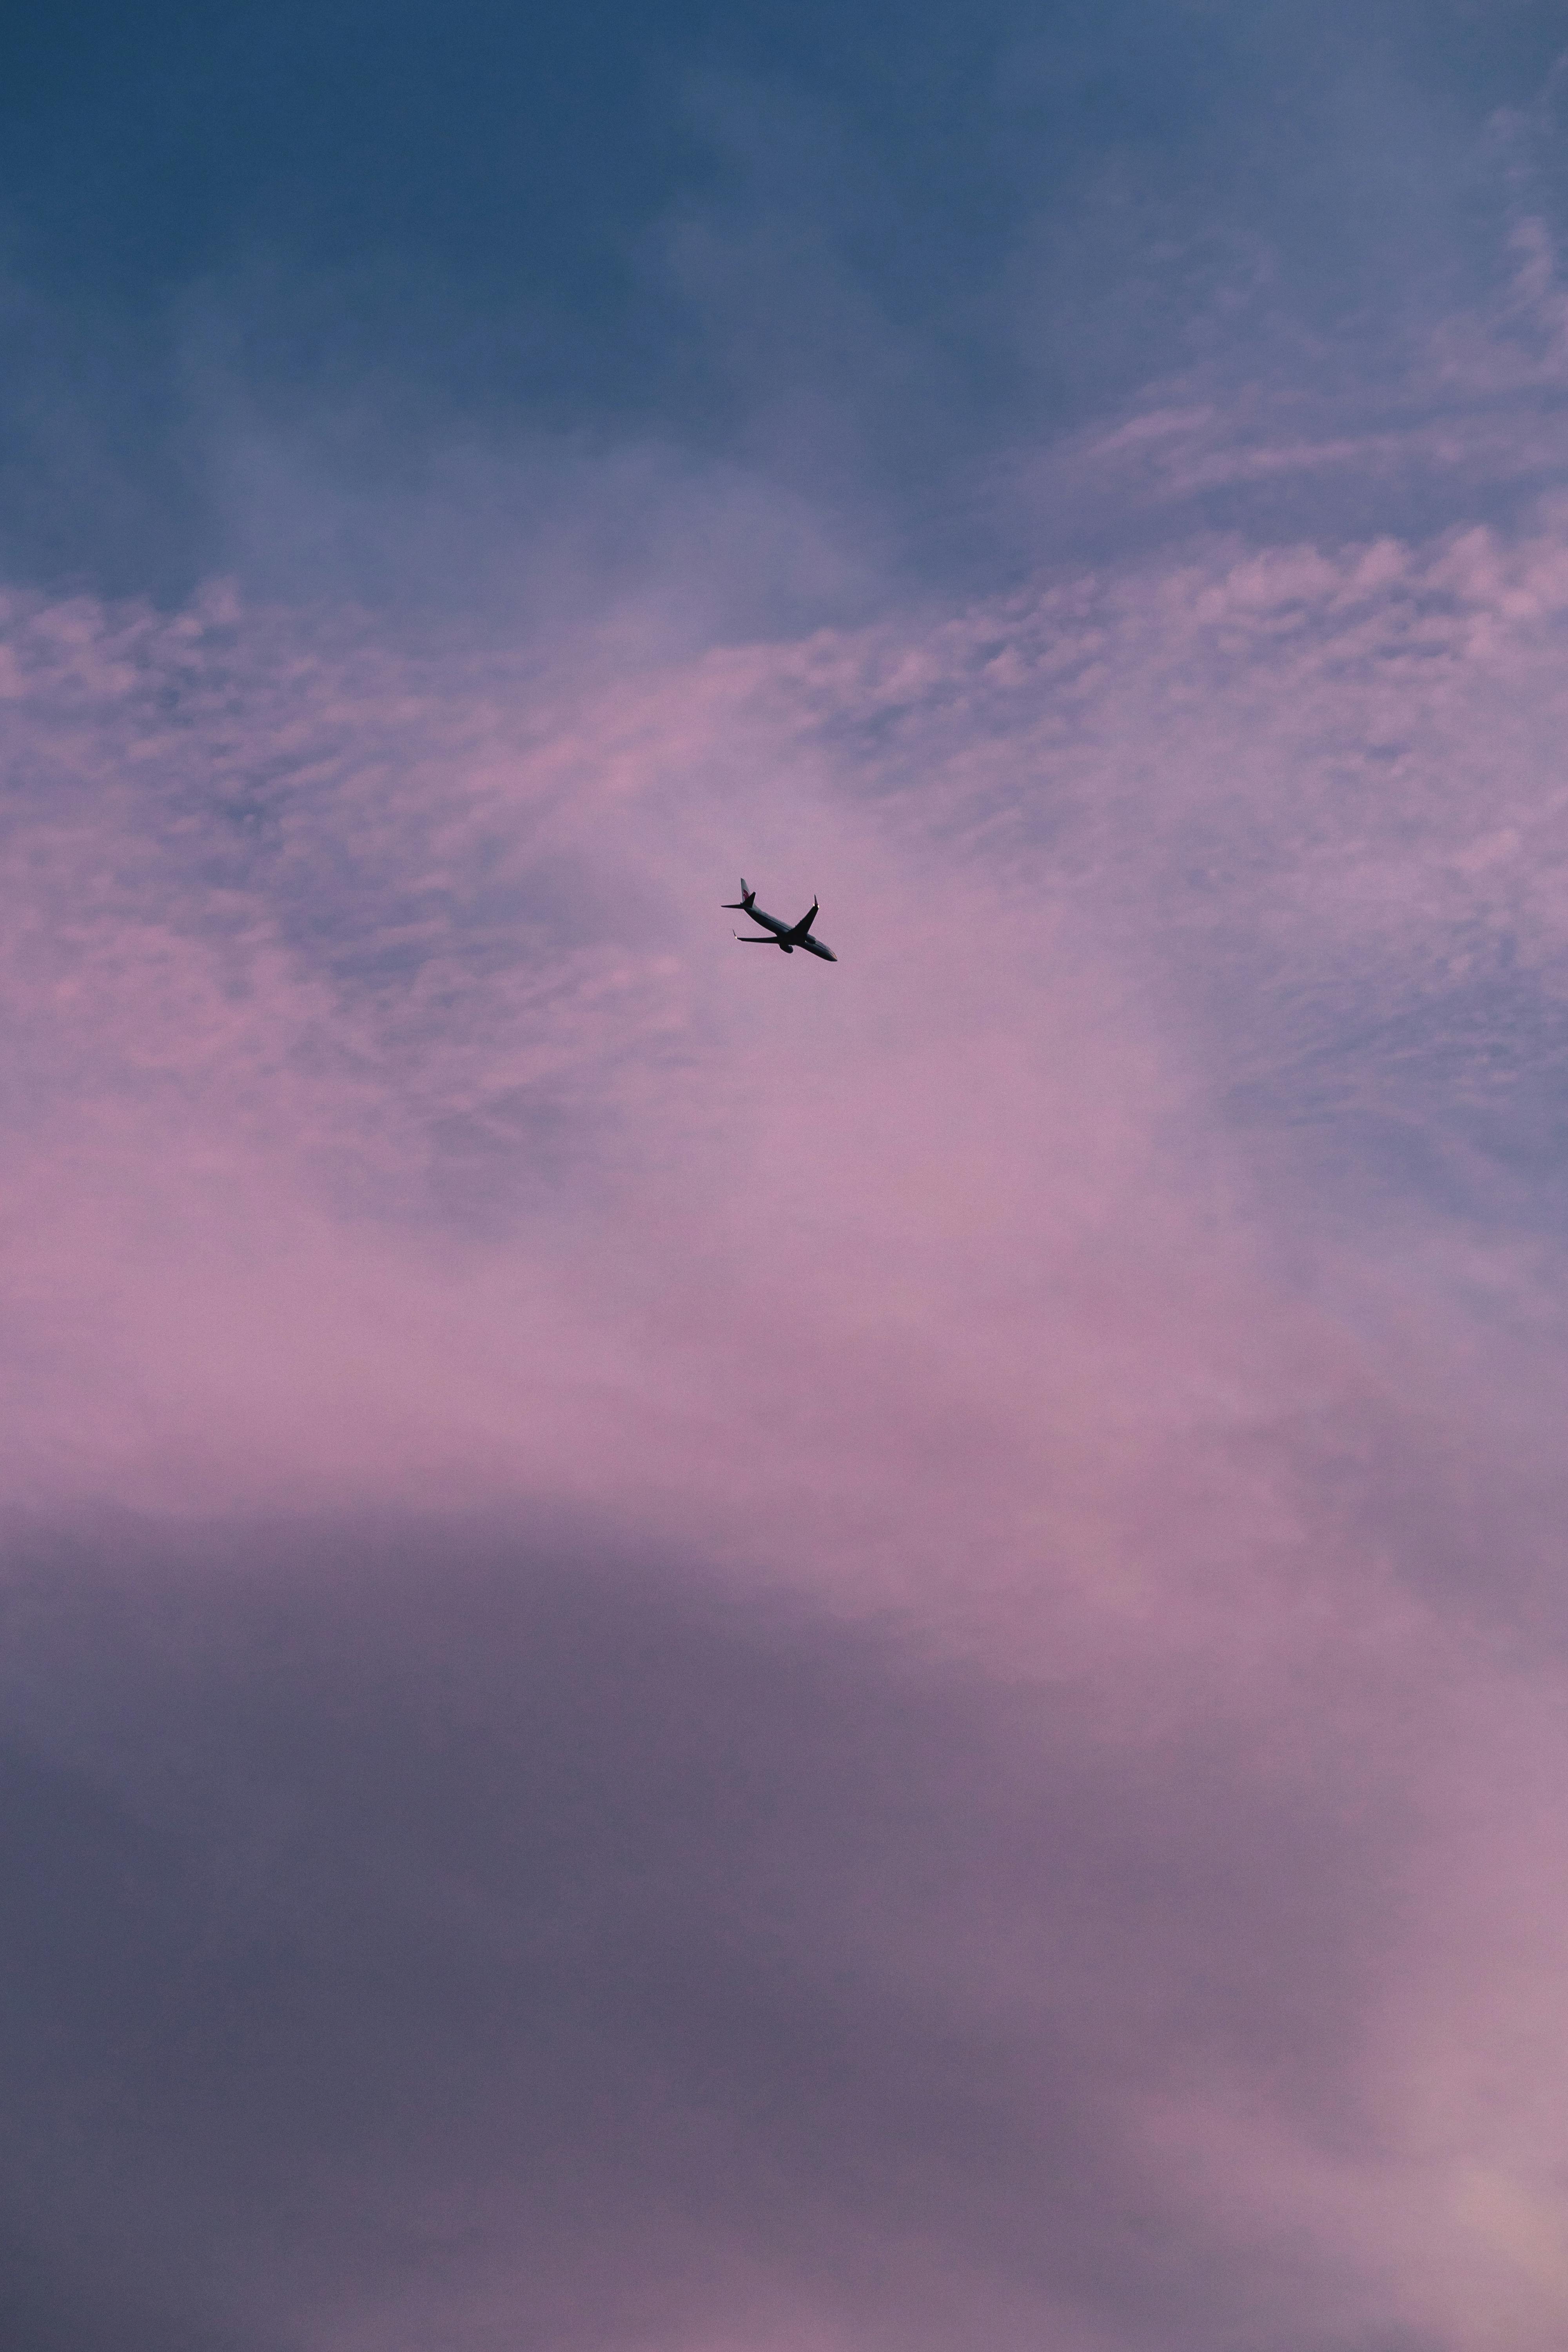  Flugzeug Hintergrundbild 4000x6000. Kostenloses Foto zum Thema: flug, flugzeug, himmel, lila, vertikaler schuss, wolken